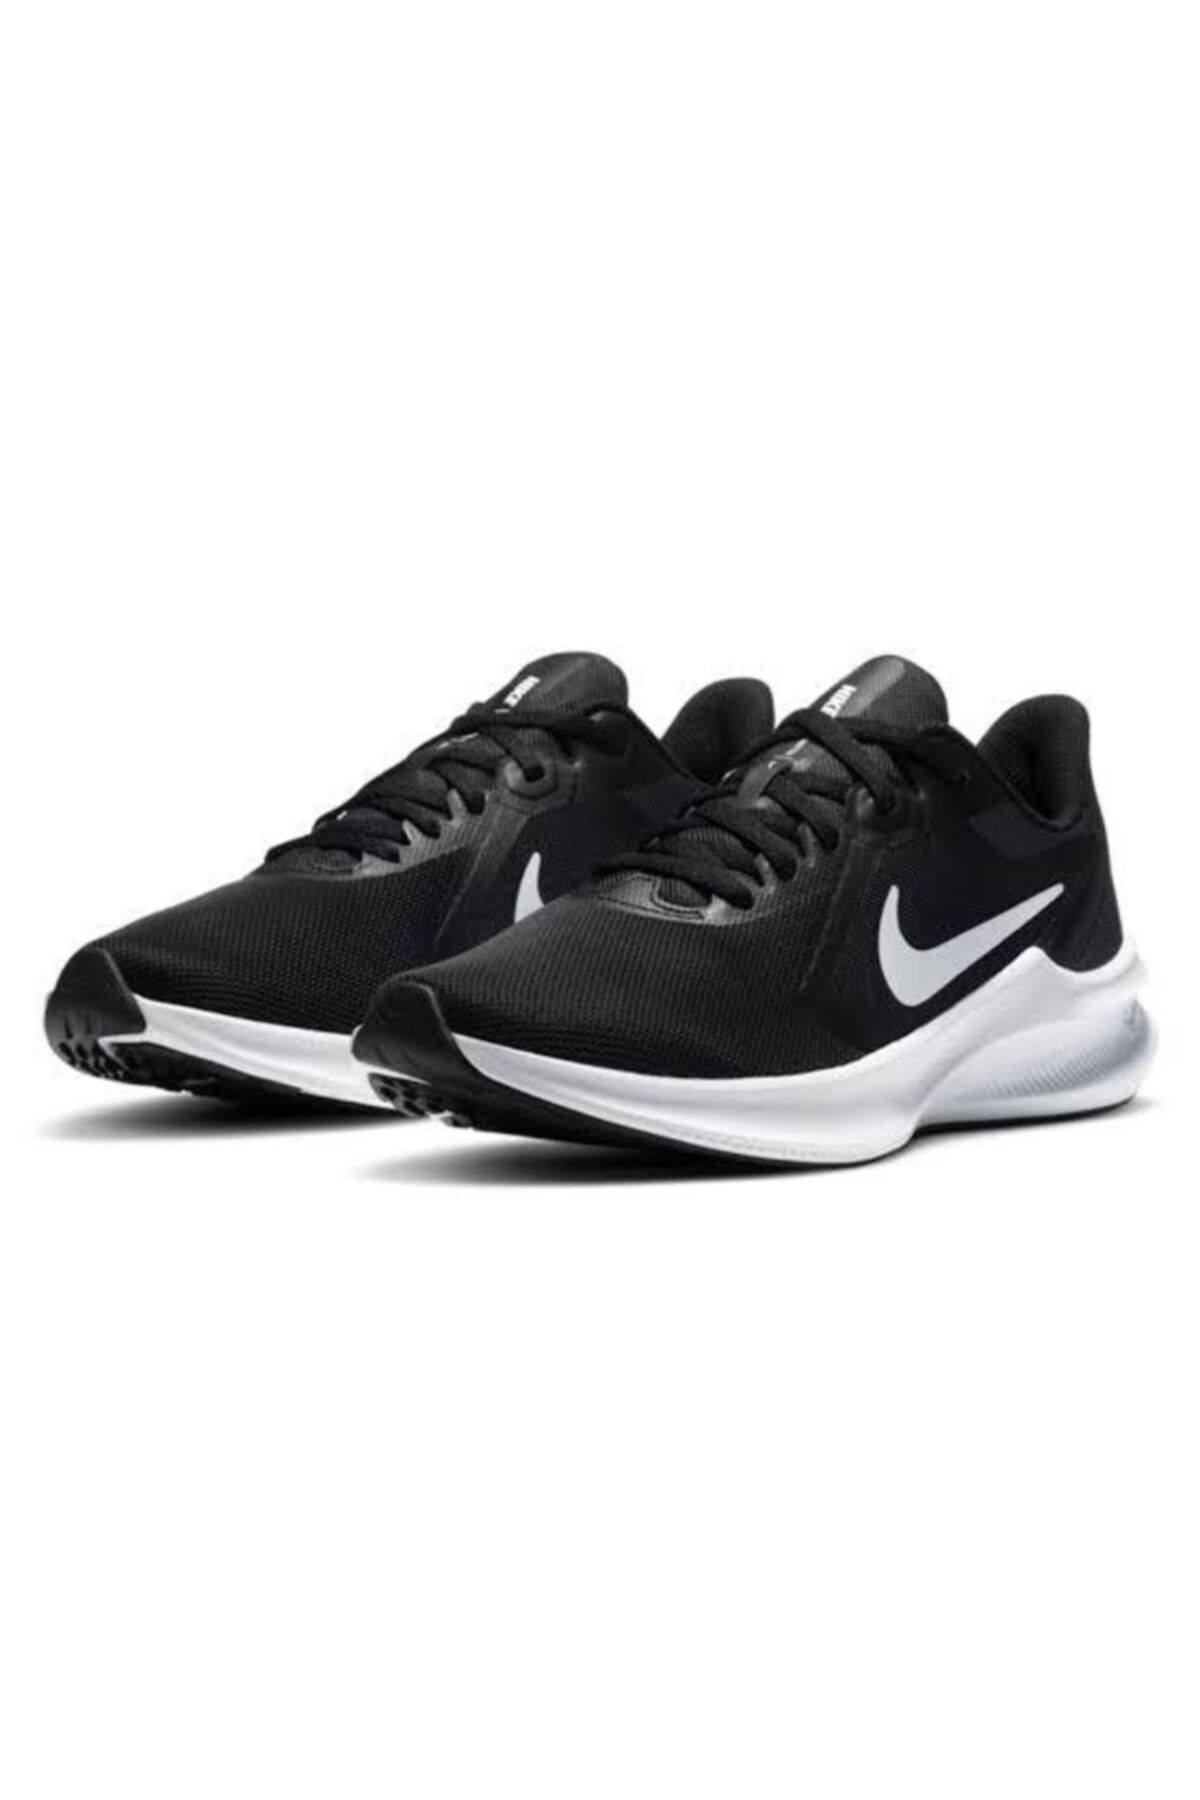 Nike Downshifter Unisex Spor Ayakkabı Cı9984 001